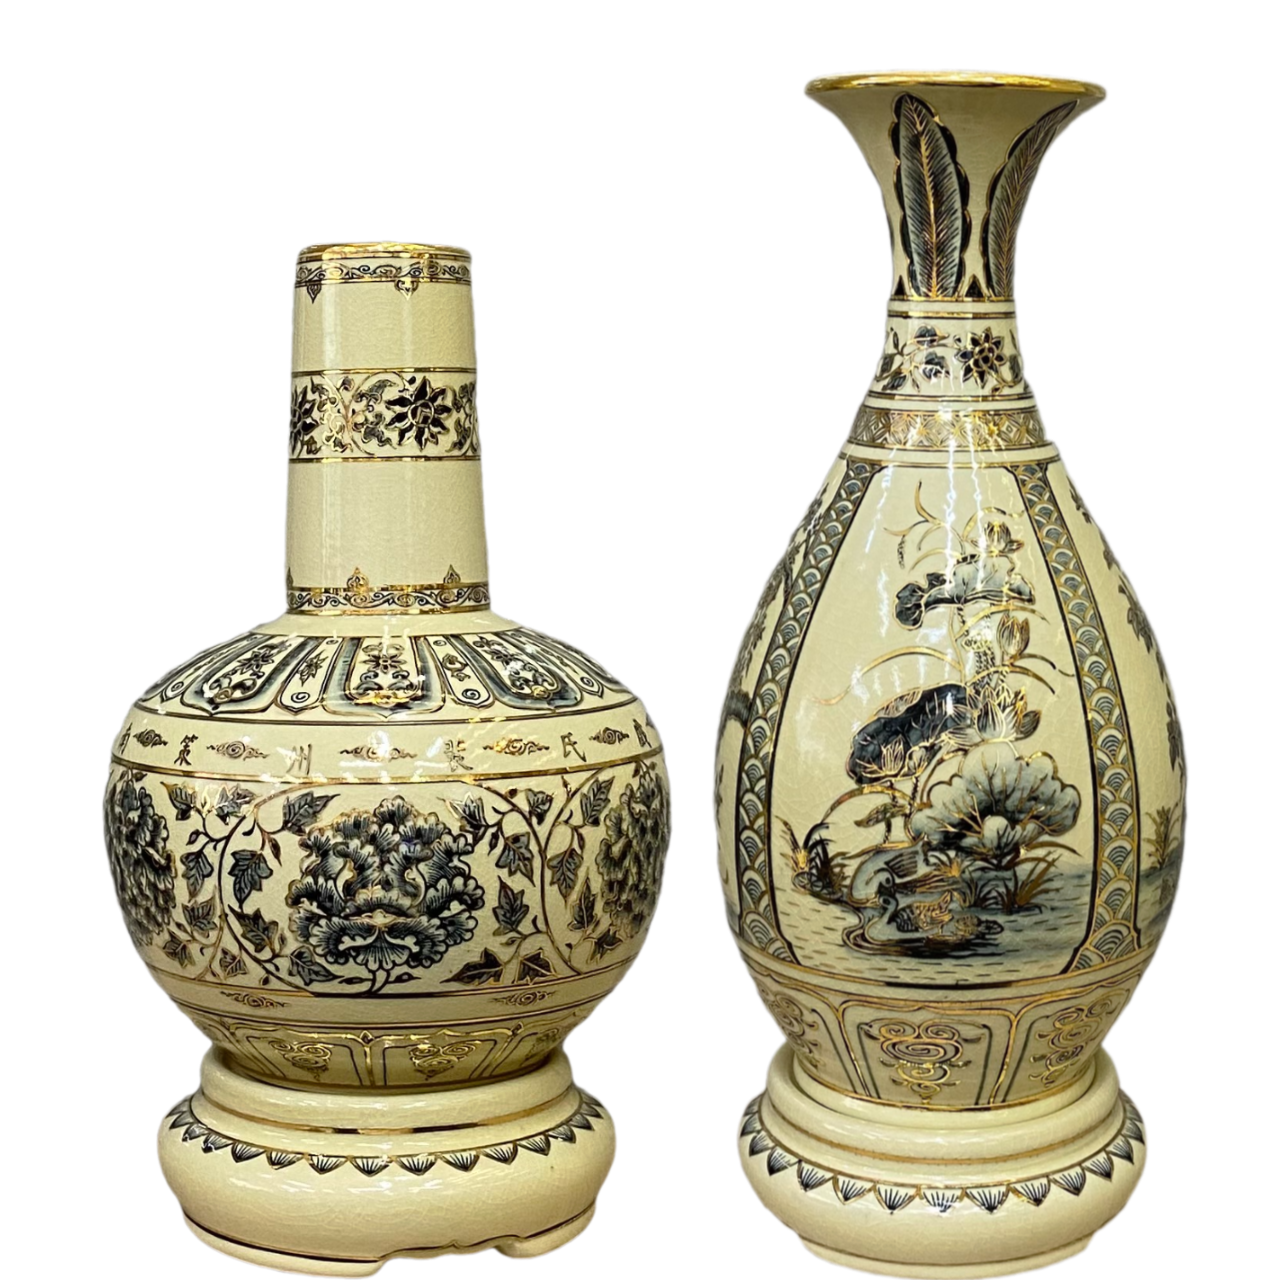 Cặp bình Hoa Lam - Tỳ Bà gốm Chu Đậu, hoạ tiết vẽ viền vàng 24K, cao 28cm và 36cm